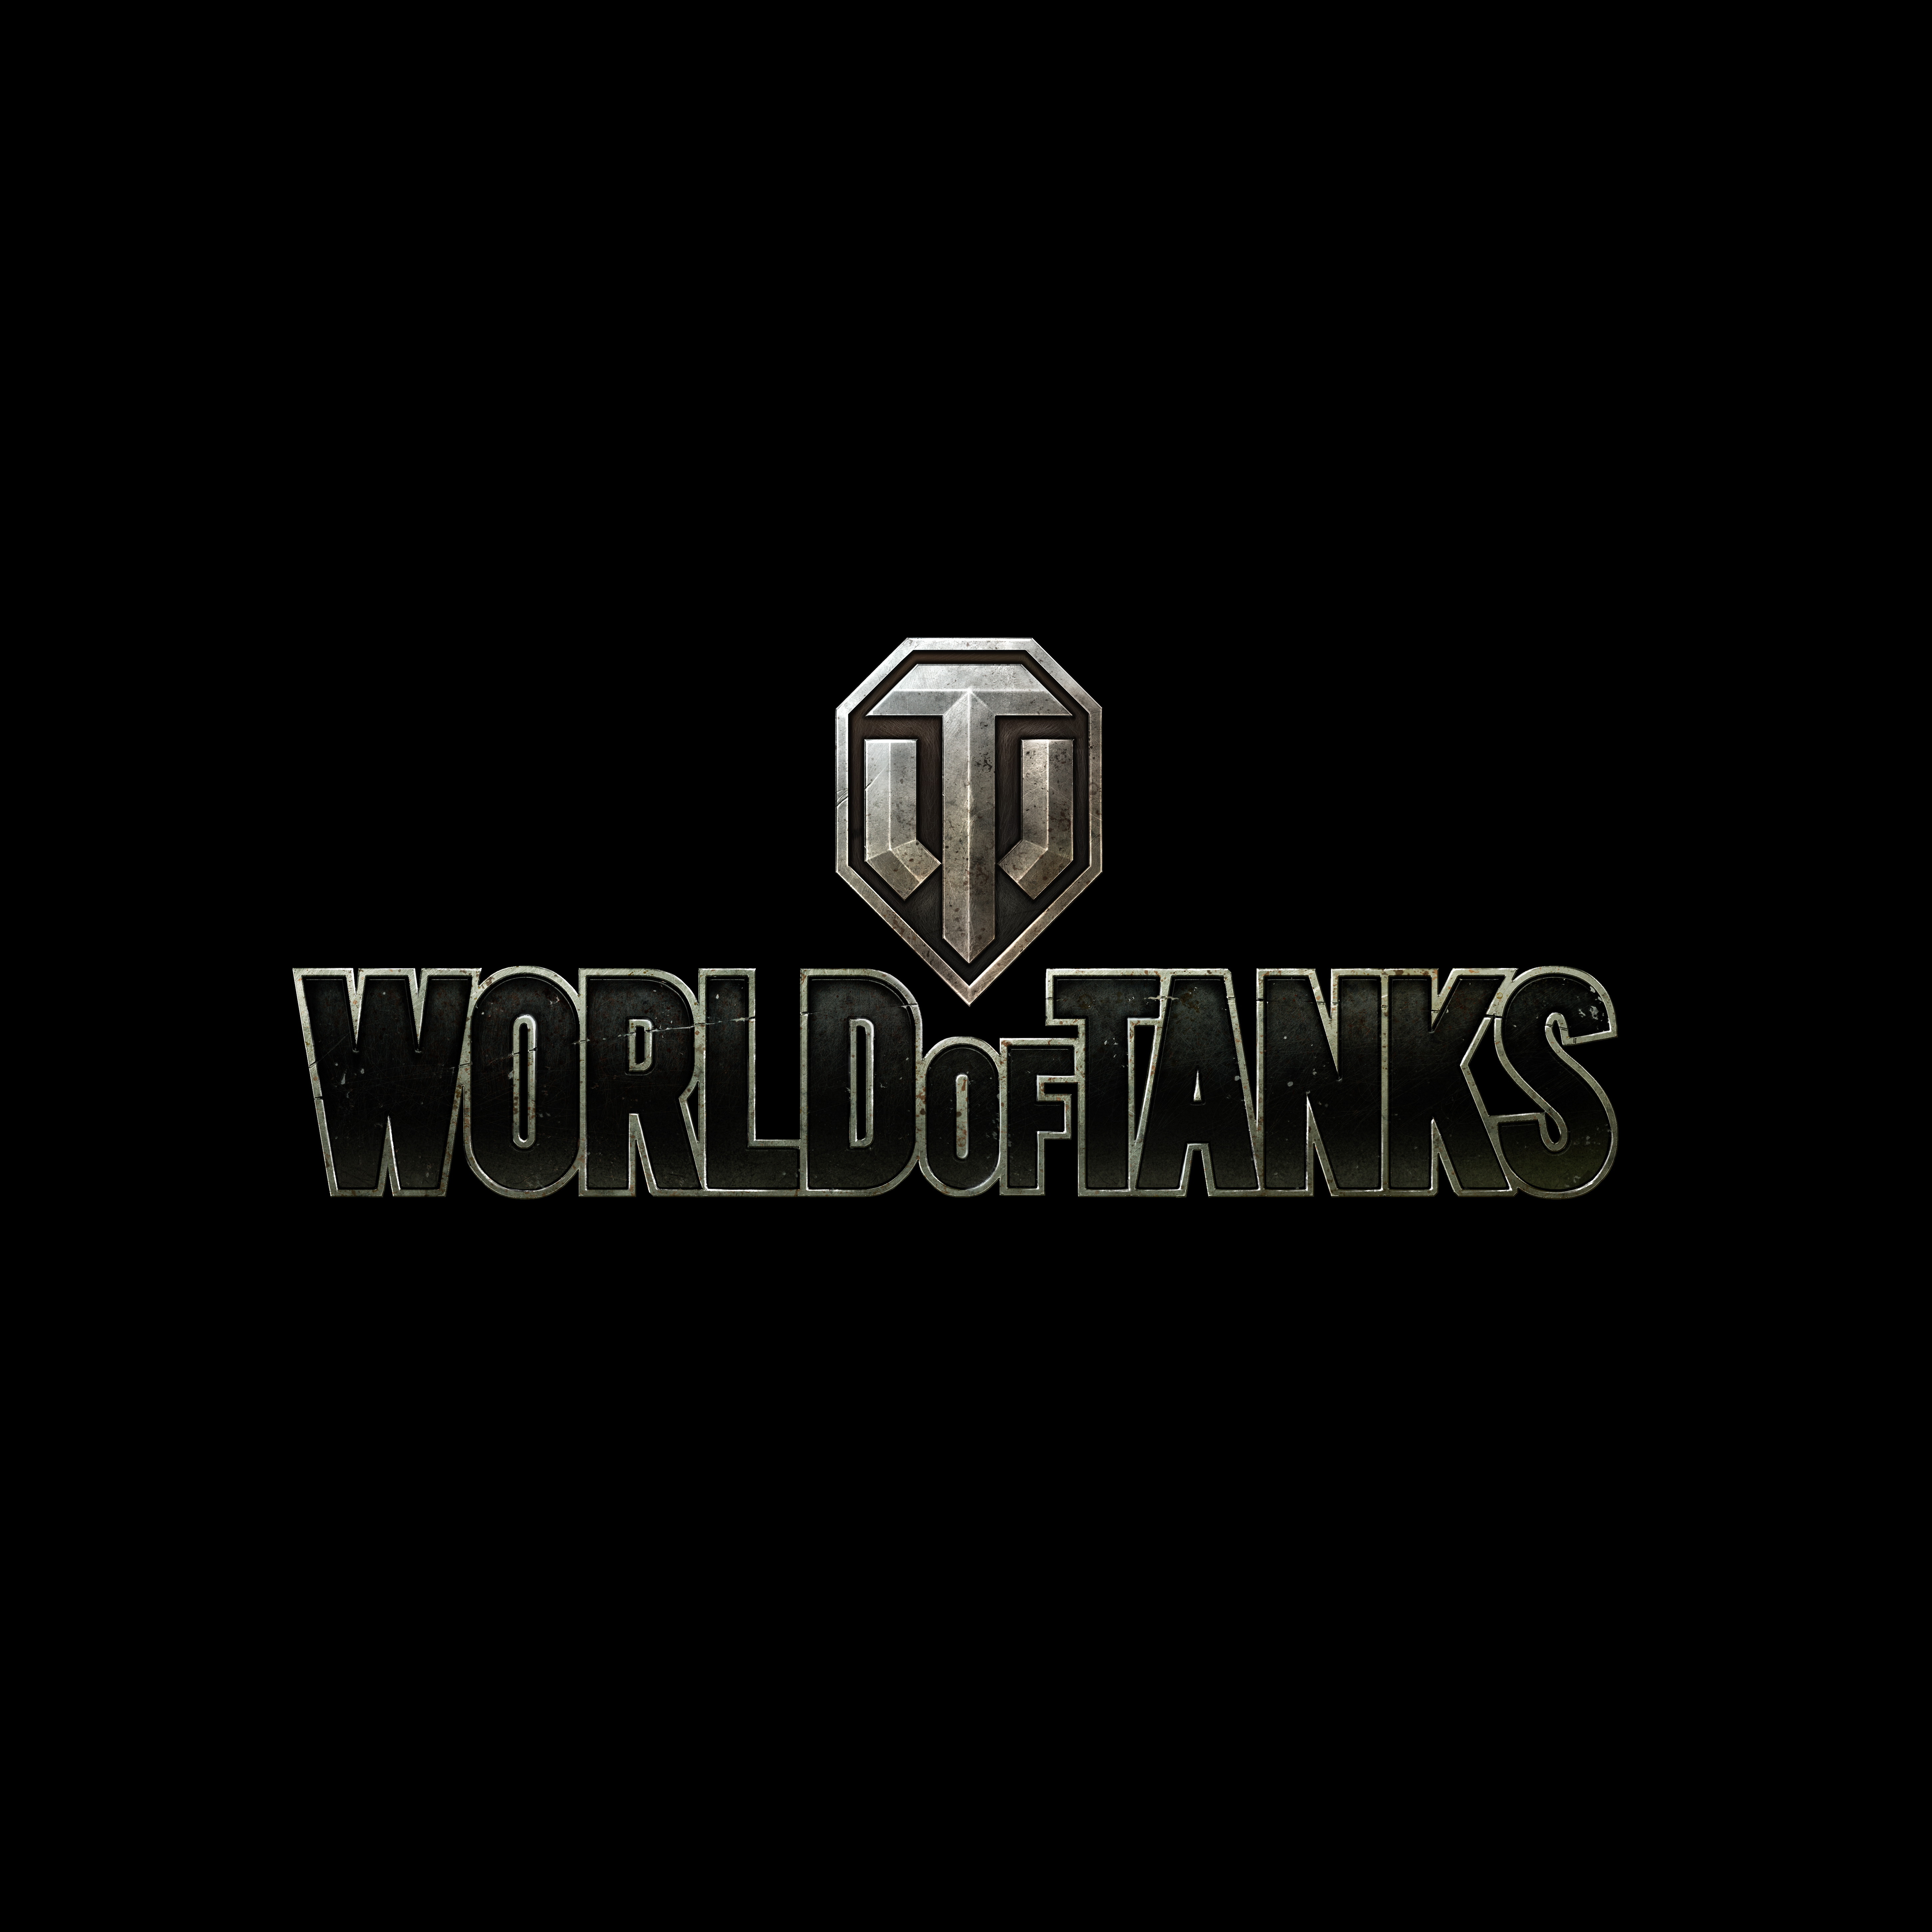 Логотип World of Tanks | купить, обзор, цена, отзывы